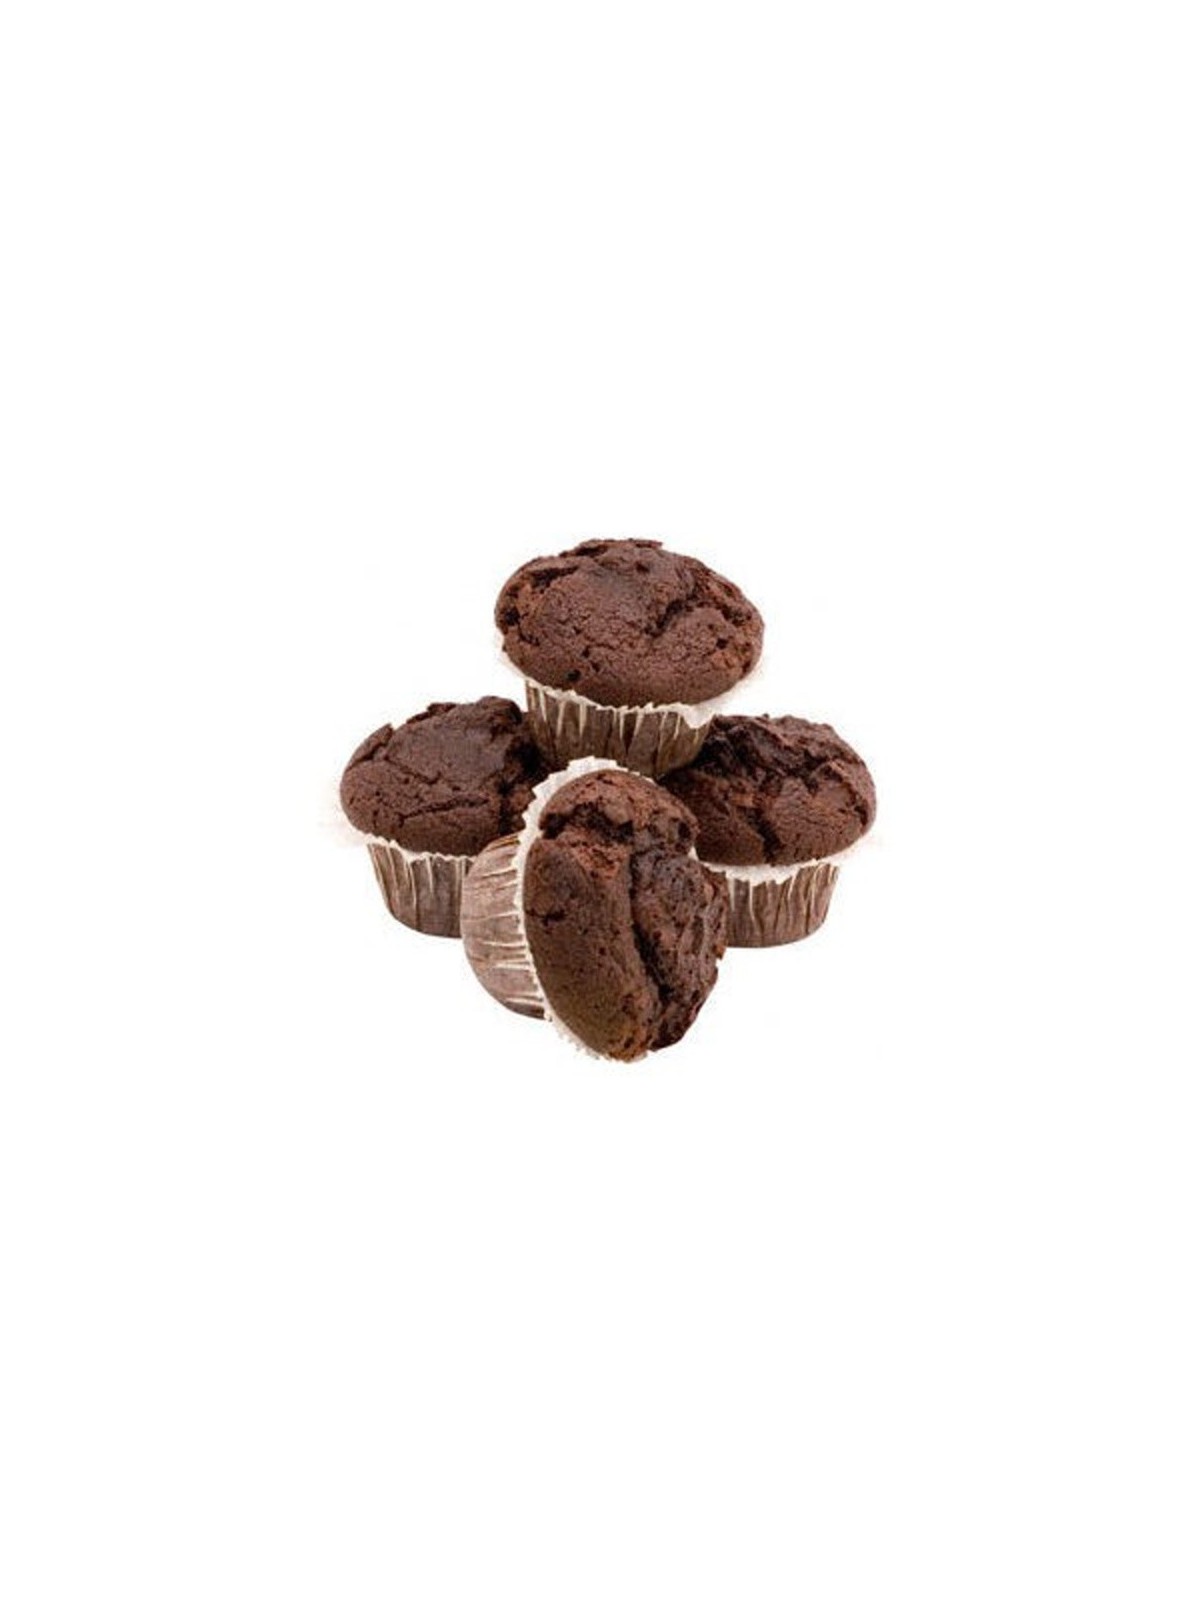 Credin Muffinmischung - Schokolade - 1kg